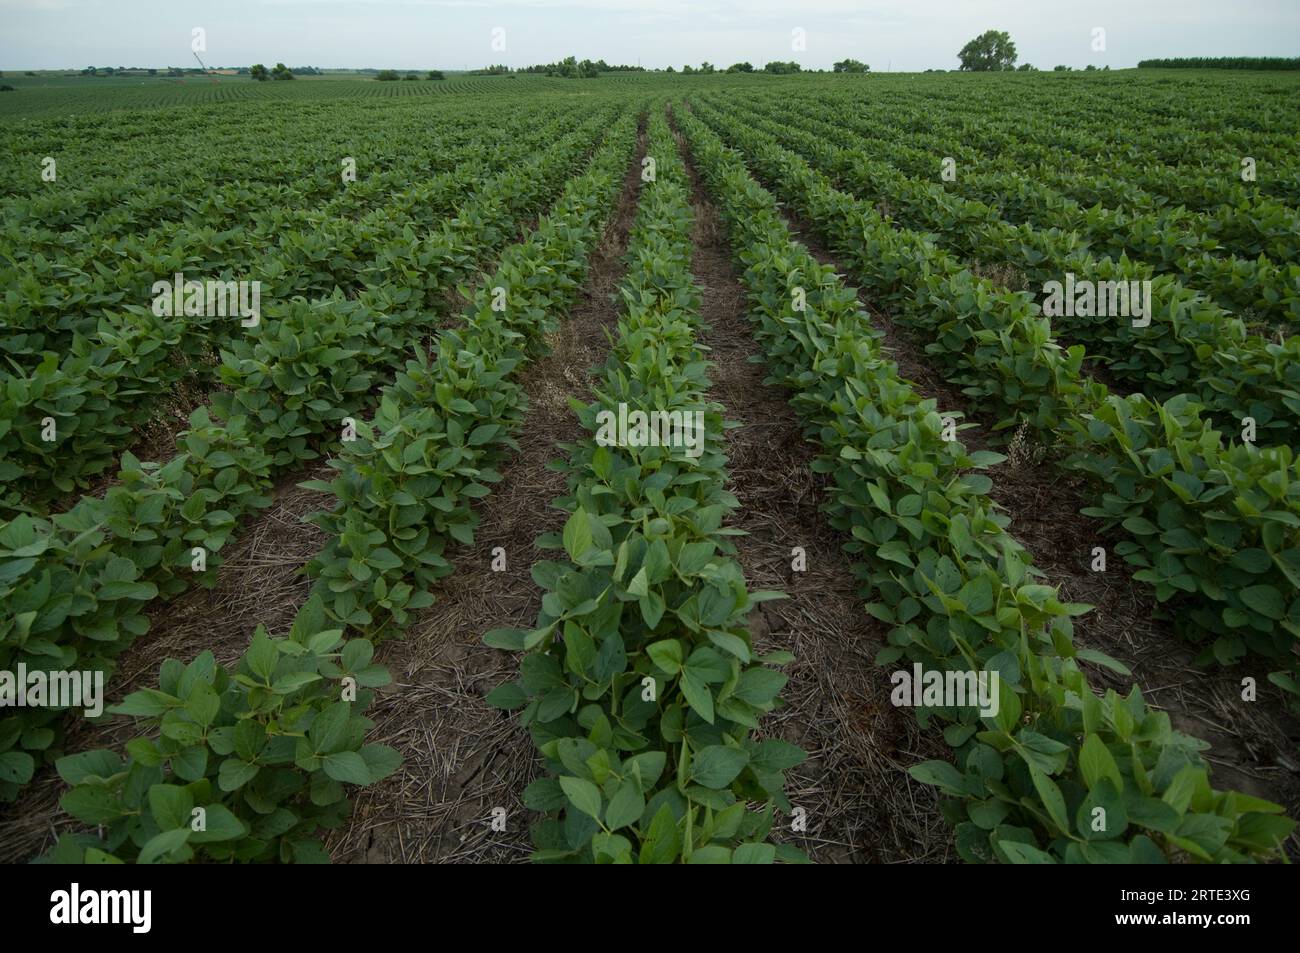 Rangées de plants de soja (Glycine max) dans un champ agricole au Nebraska, États-Unis ; Cortland, Nebraska, États-Unis d'Amérique Banque D'Images